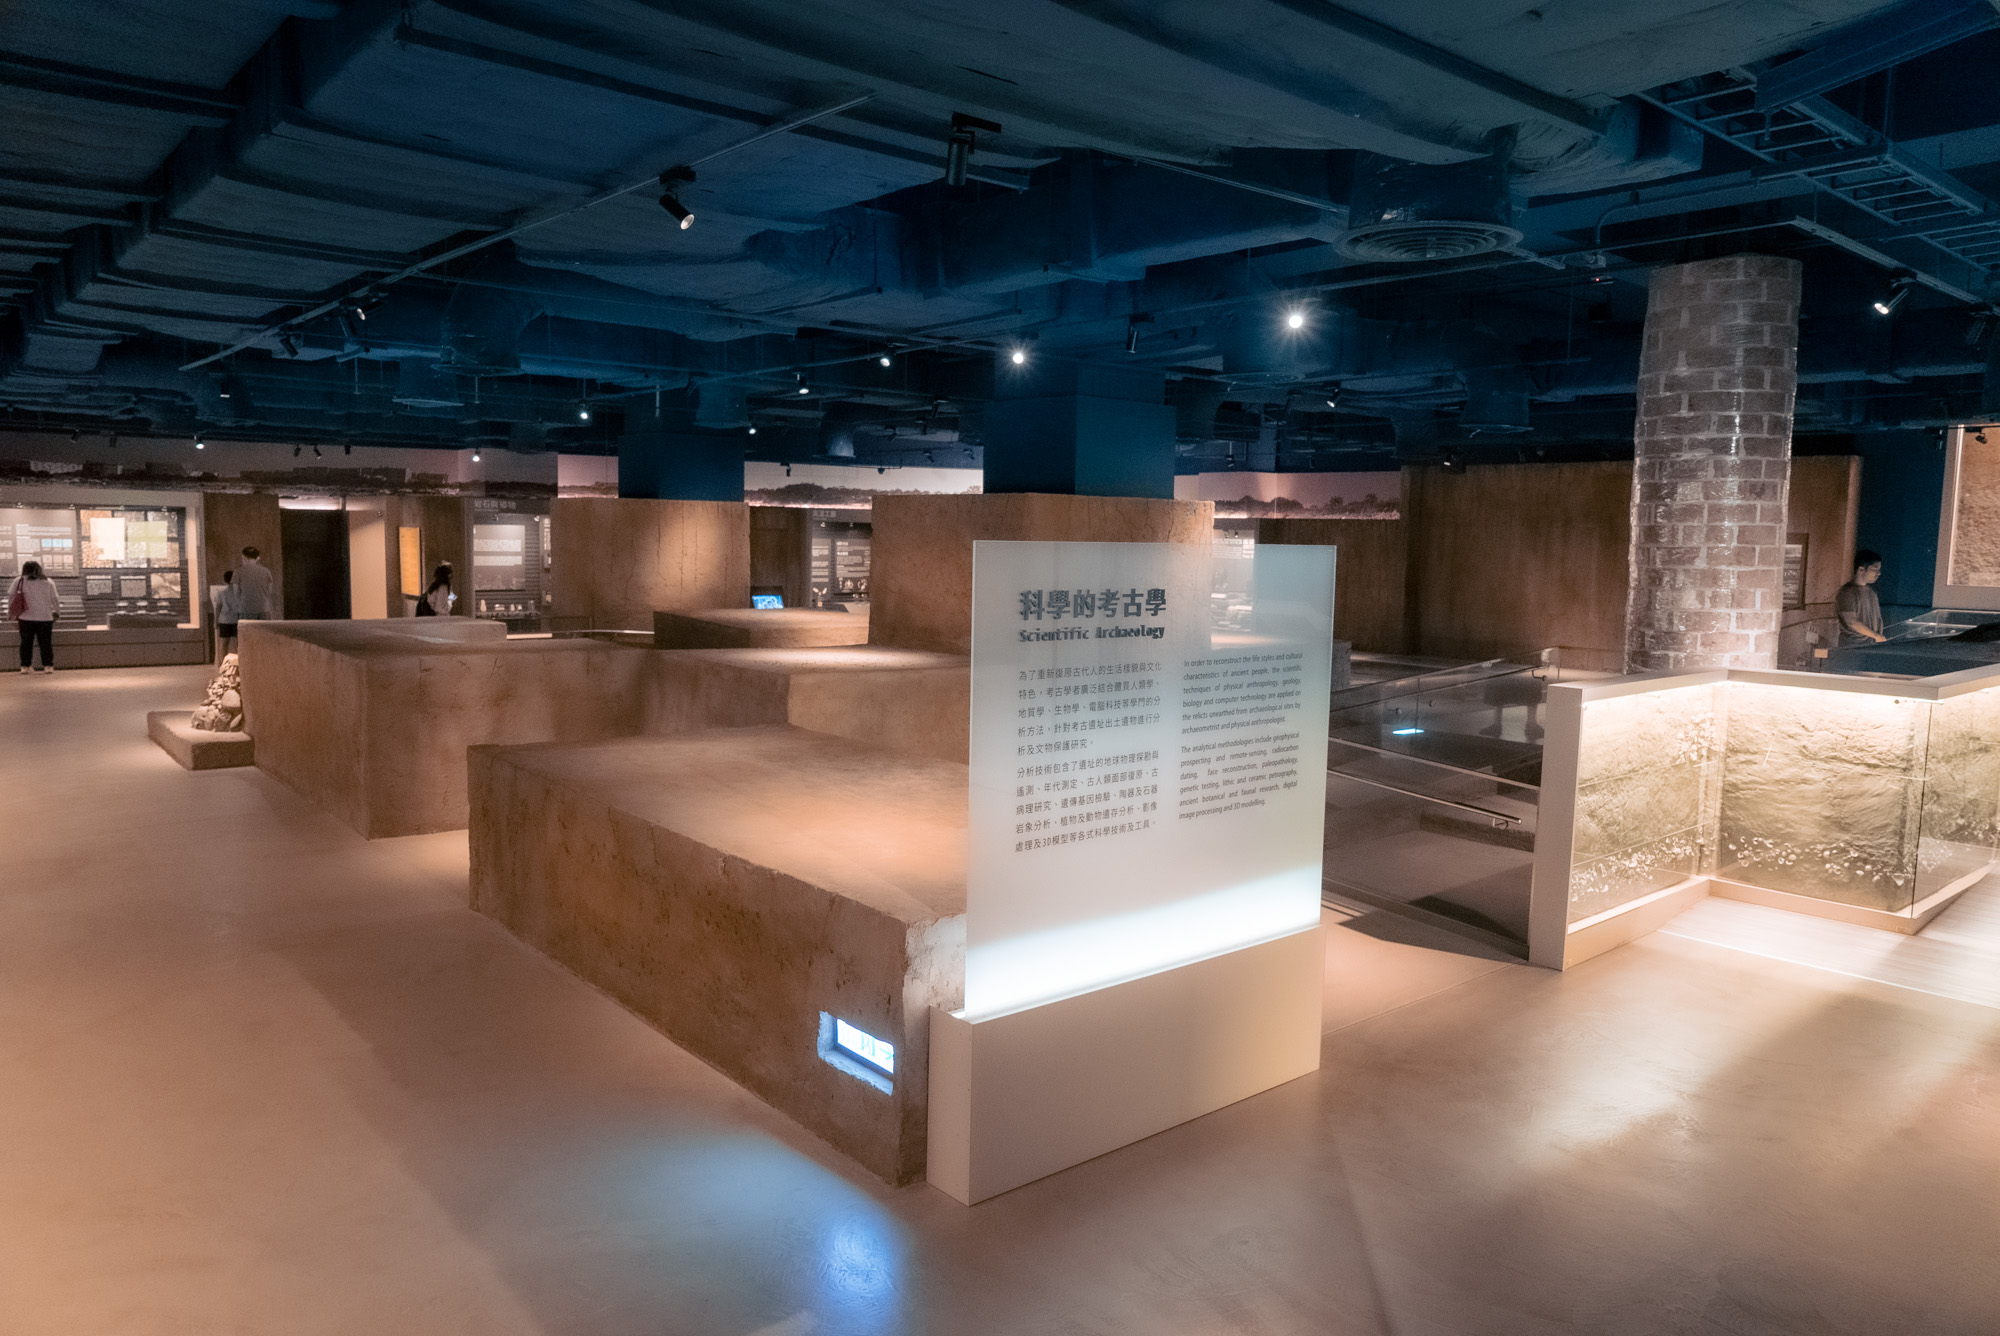 第三展廳-科學的考古學